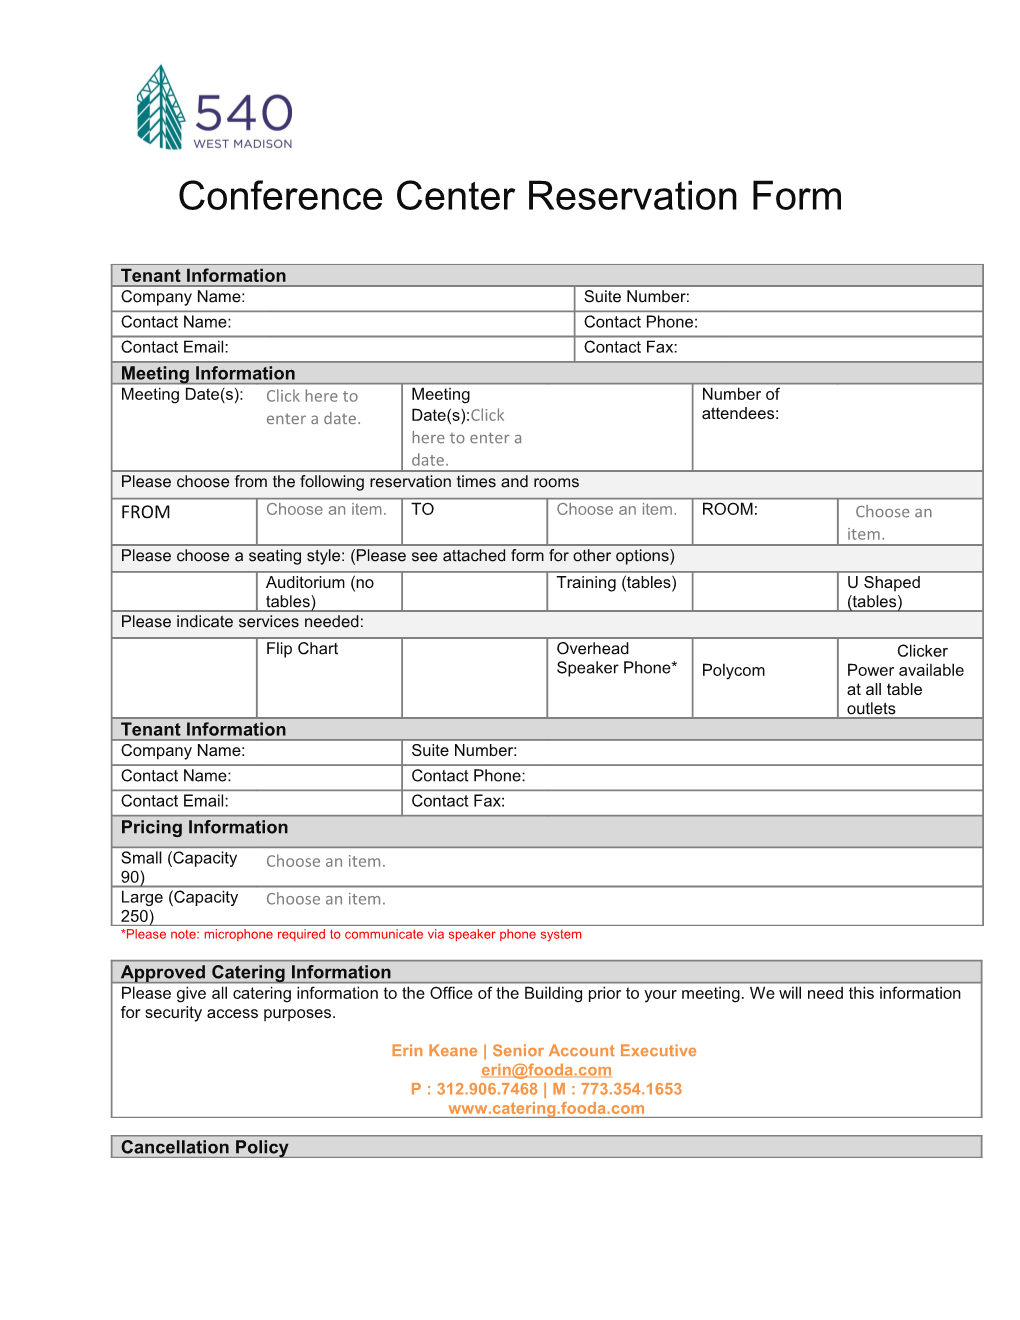 Conference Center Reservation Form s1